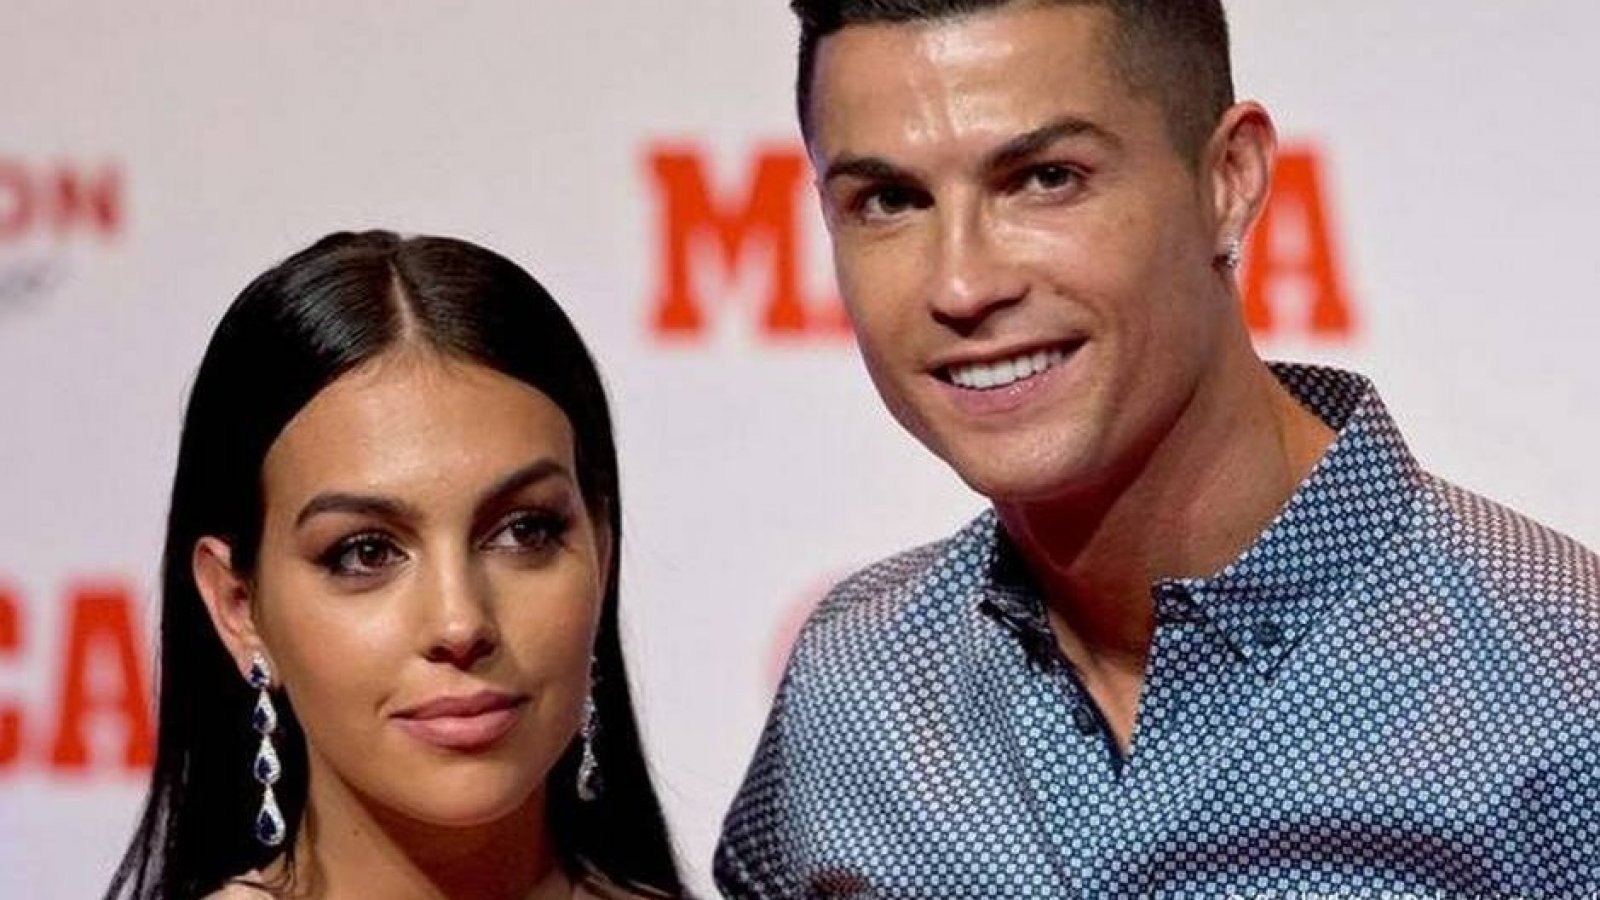 La impresionante transformación física de la novia de Cristiano Ronaldo  desde que son pareja | 24horas